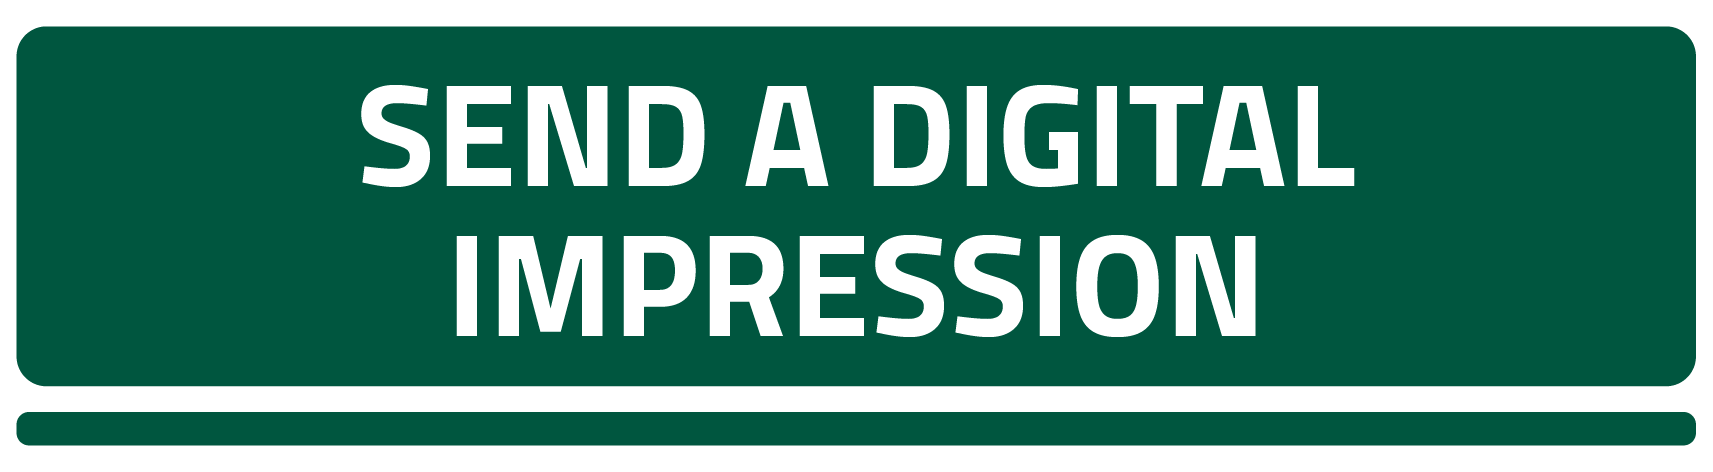 Send a Digital Impression